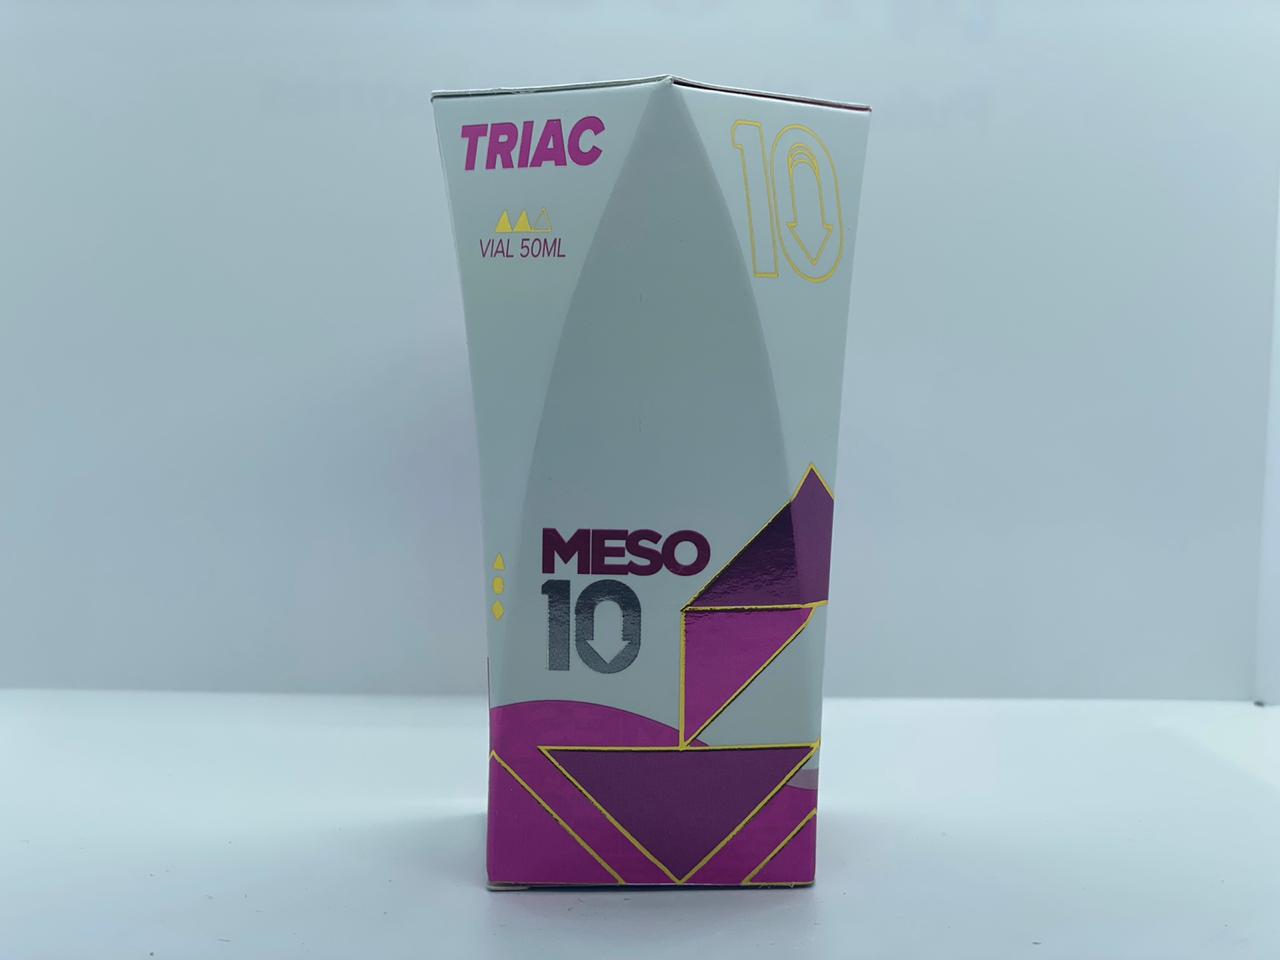 Meso10 Triac 50Ml Vial